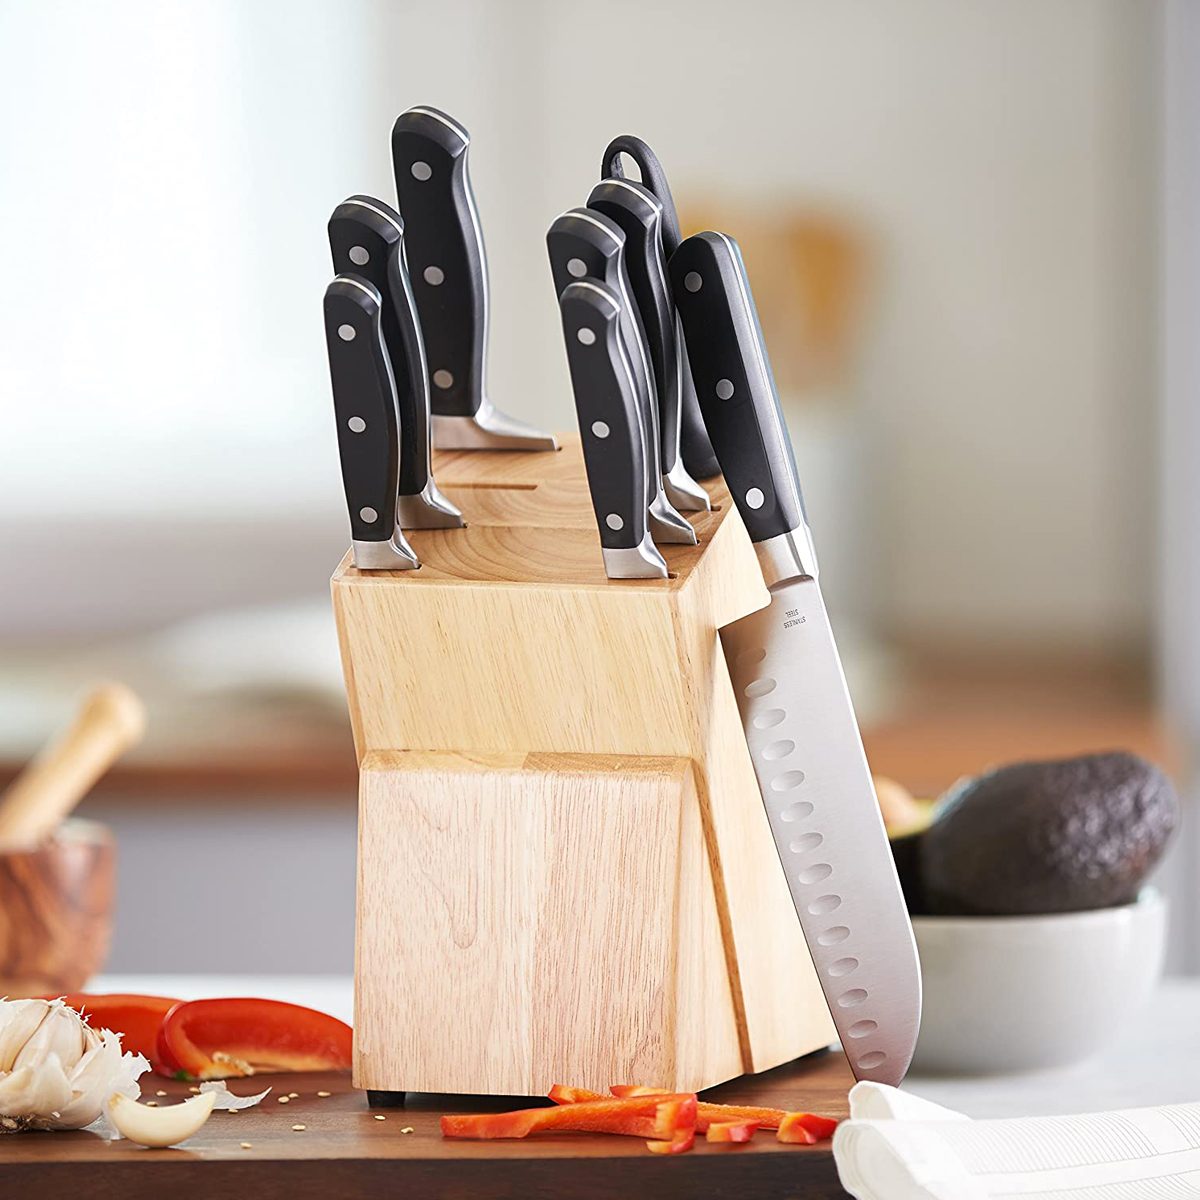 Amazon Basics 9 Piece Premium Kitchen Knife Block Set Ecomm Amazon.com